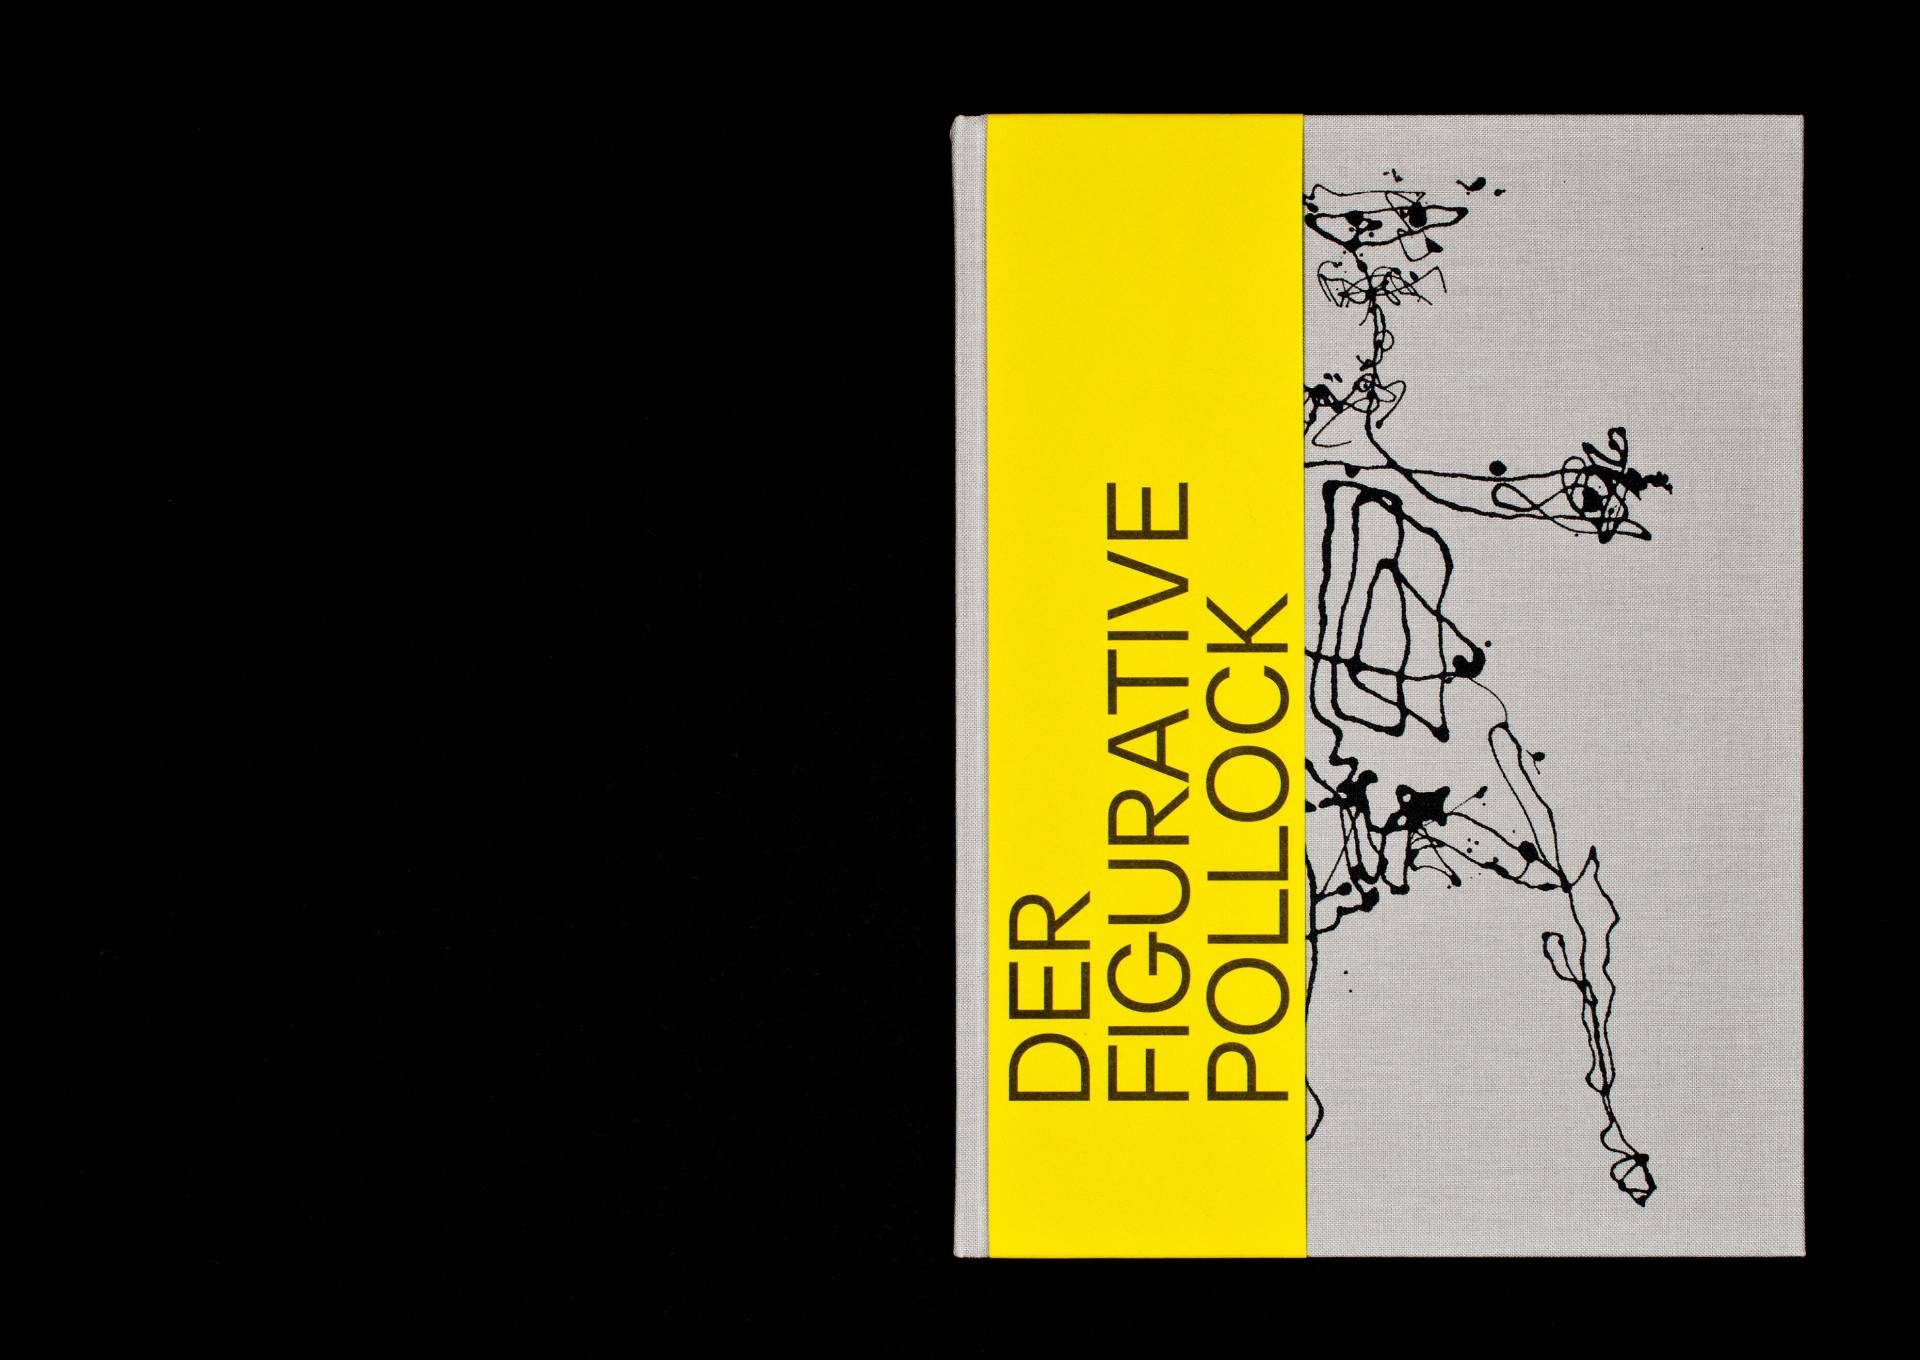 Katalog zur Ausstellung »Der figurative Pollock« für das Kunstmuseum Basel